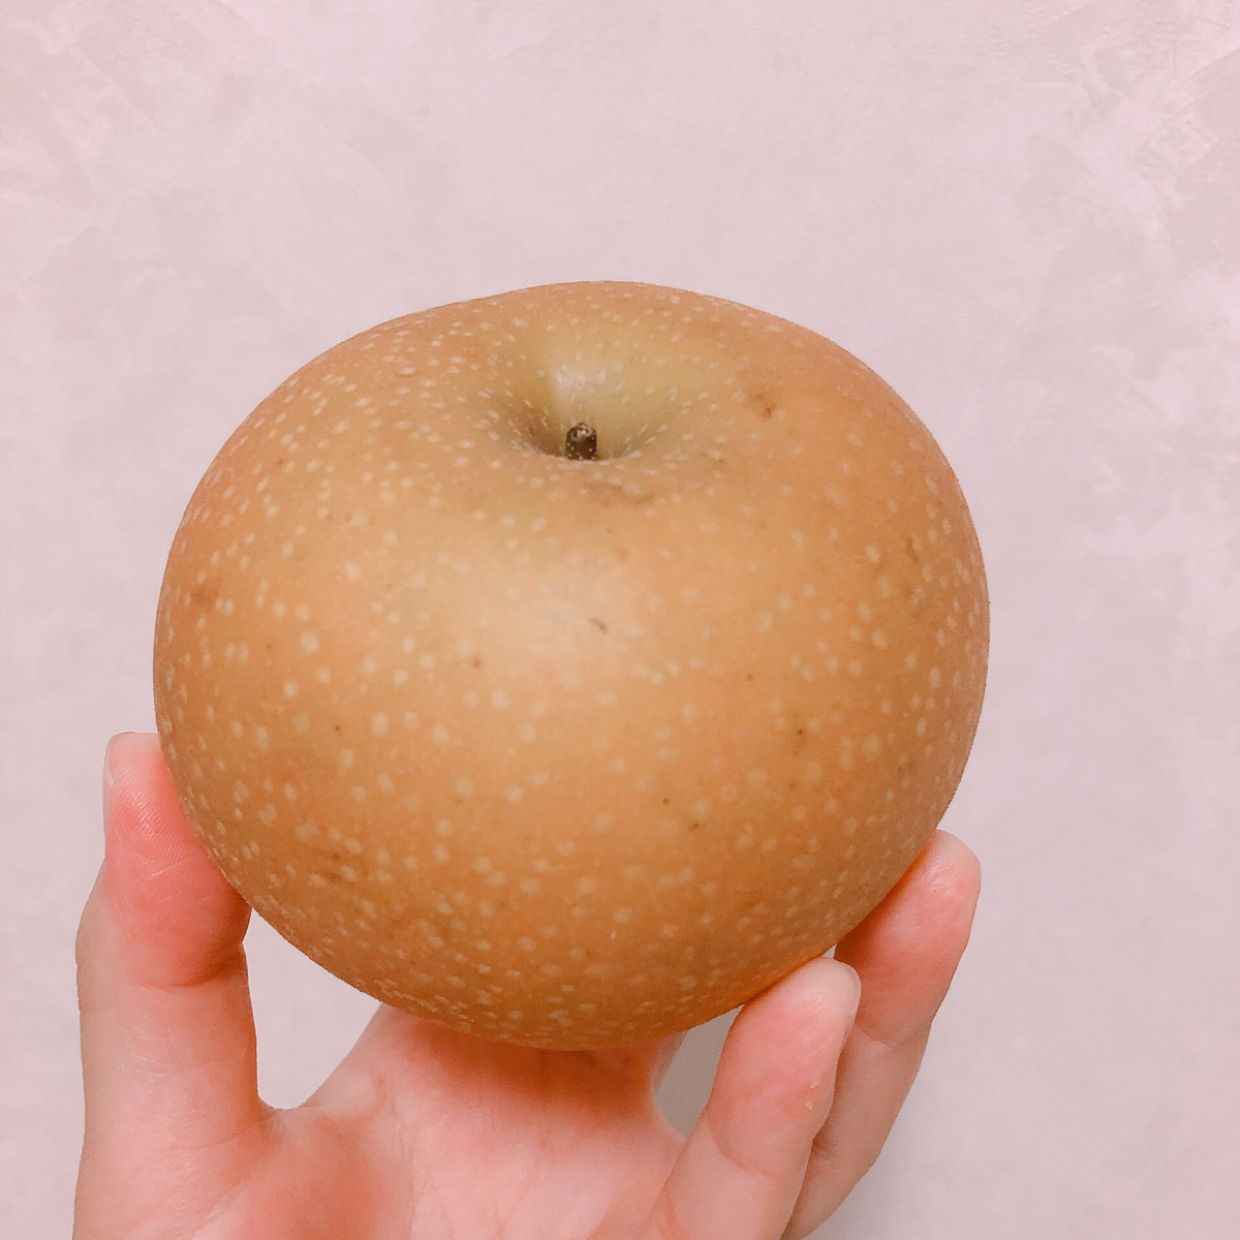  まさかの皮ごと！？NHK「あさイチ」で紹介された“梨をよりおいしく食べる方法”を実際に試してみた！ 